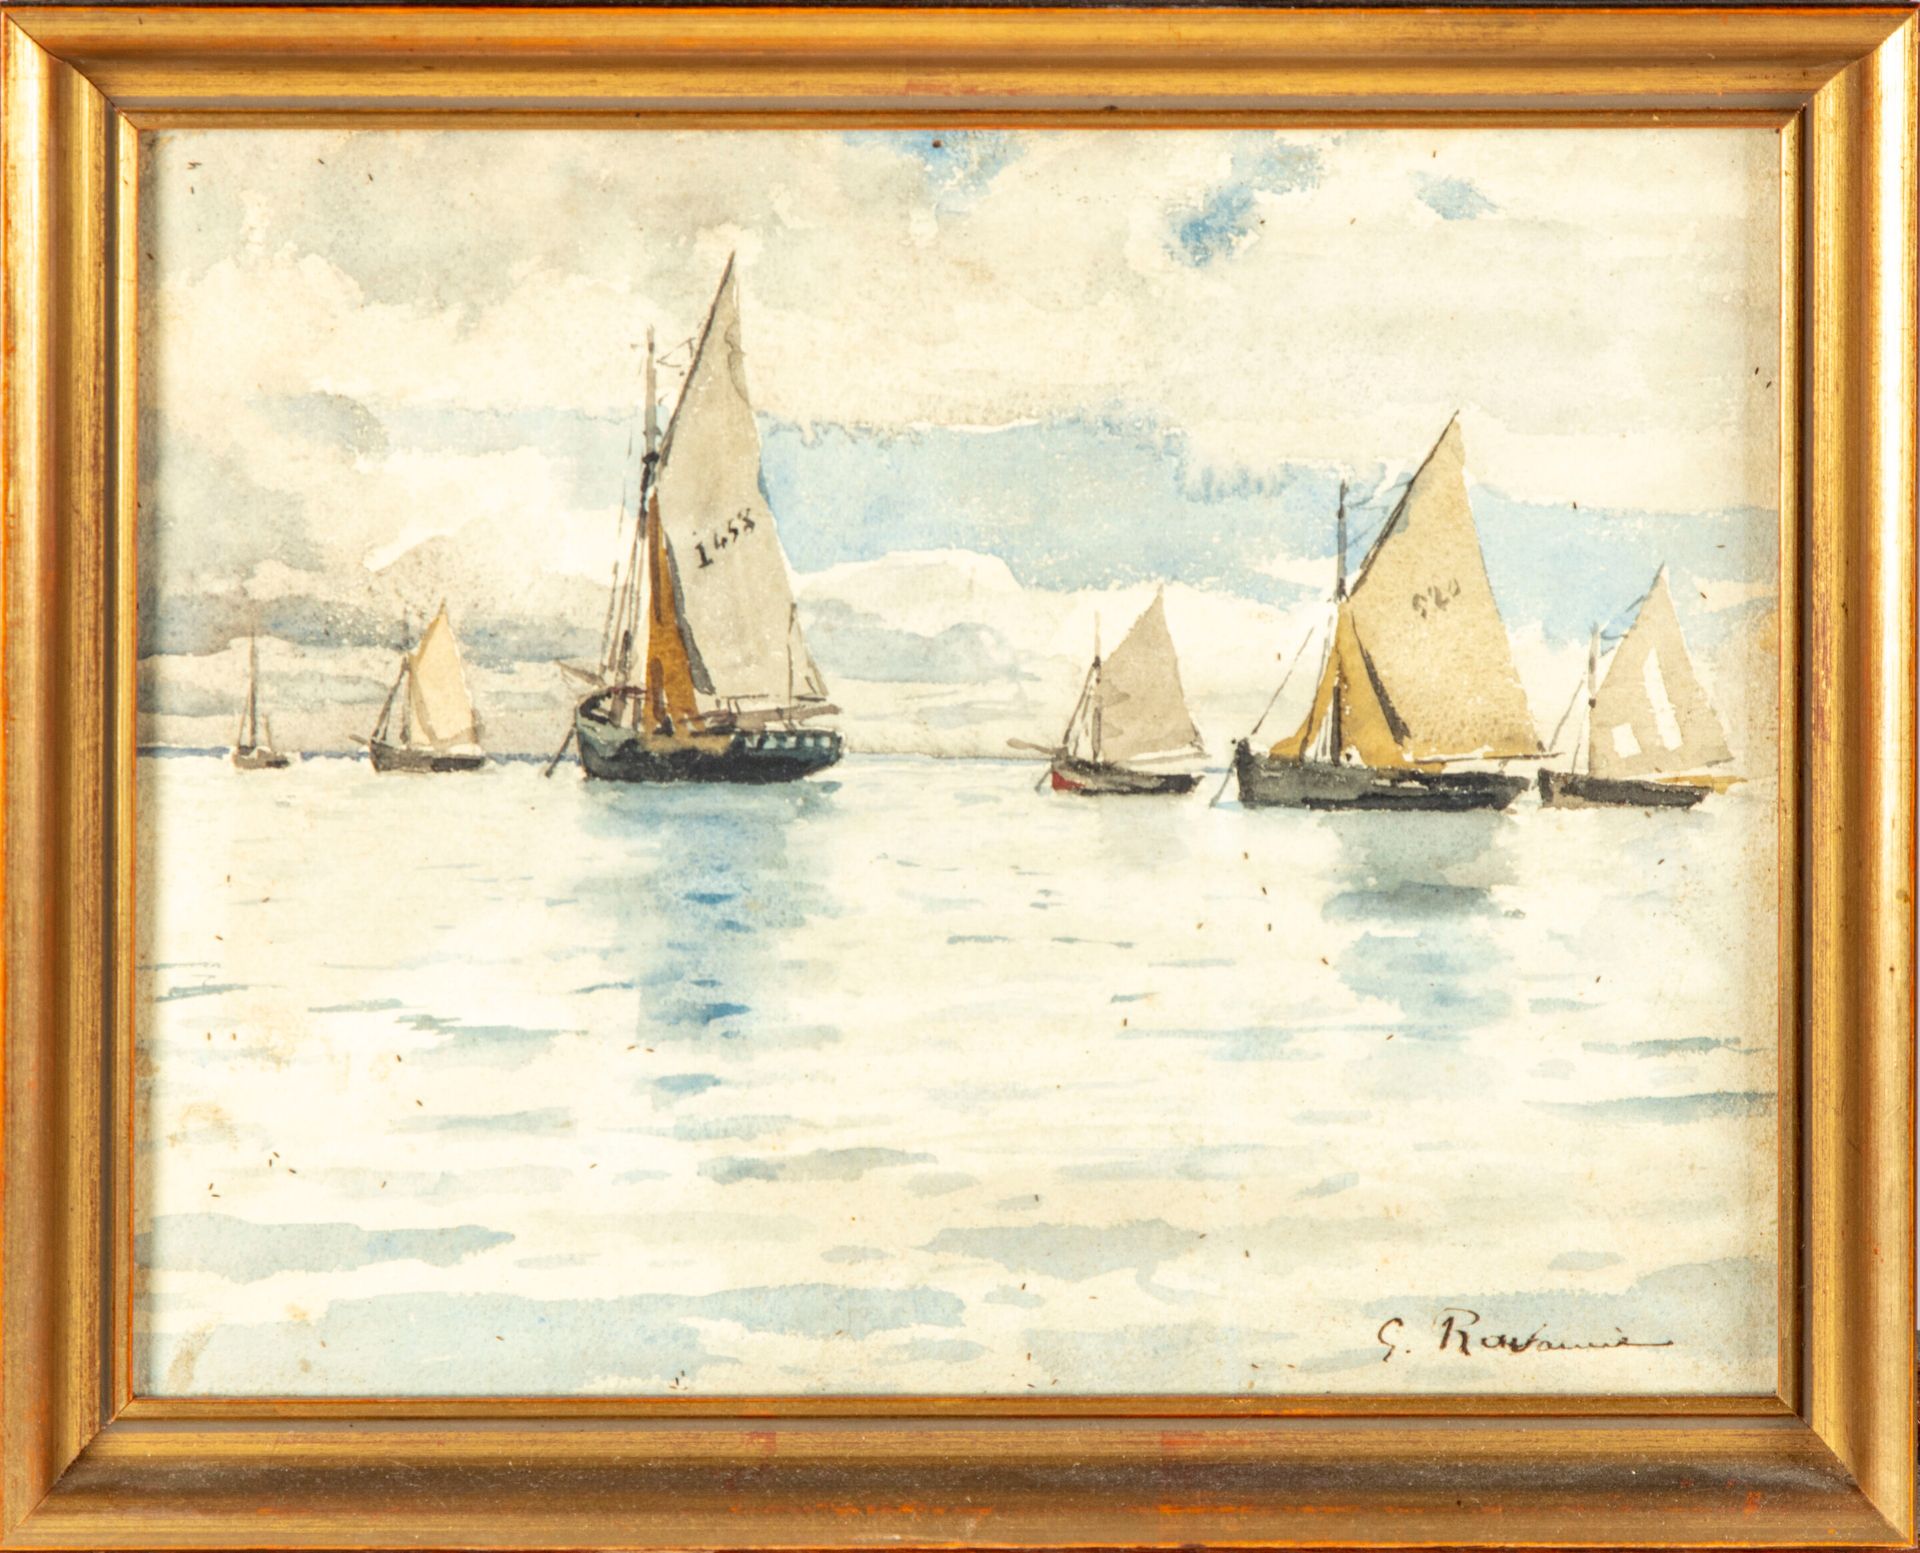 RAVANNE Léon Gustave RAVANNE (1854-1904)

Boats at sea 

Watercolor, signed lowe&hellip;